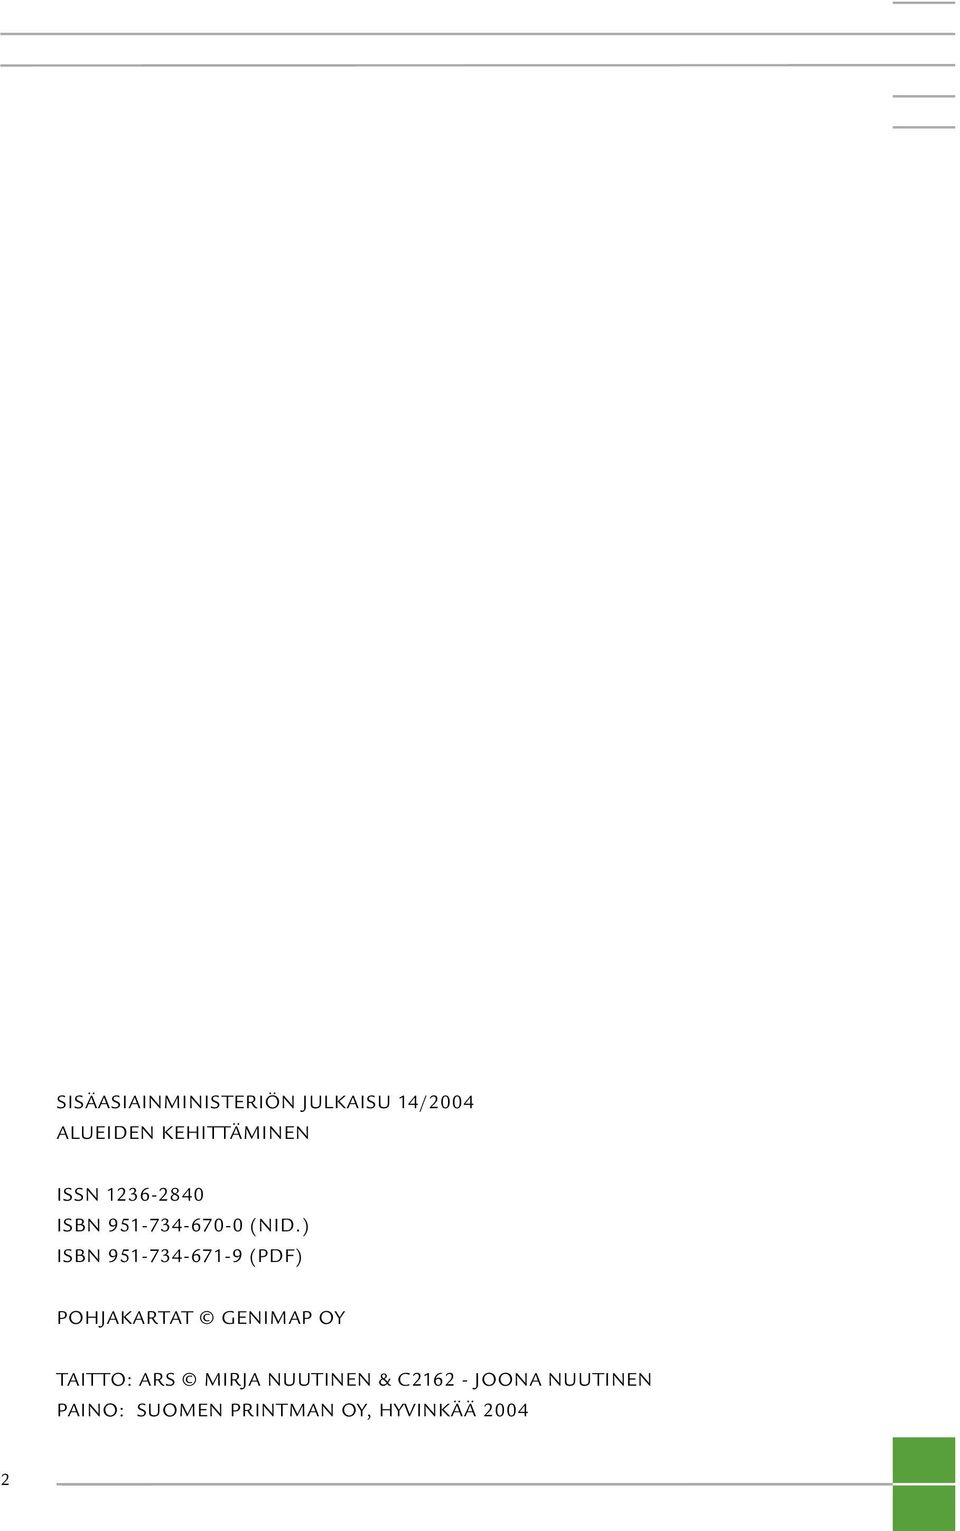 ) ISBN 951-734-671-9 (PDF) POHJAKARTAT GENIMAP OY TAITTO: